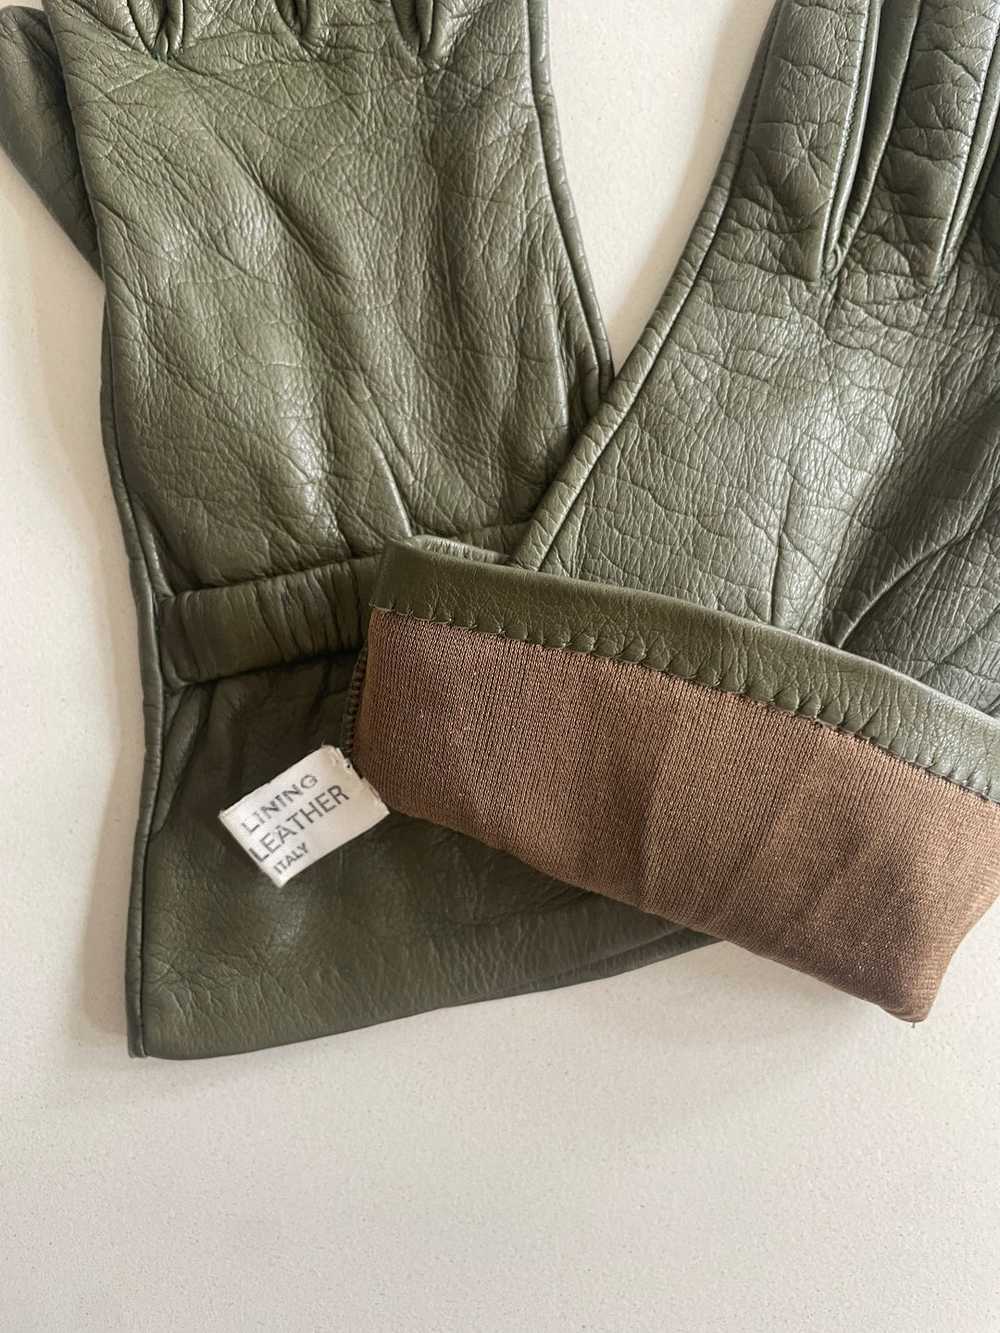 Vintage Green Kid Leather Gloves - image 4